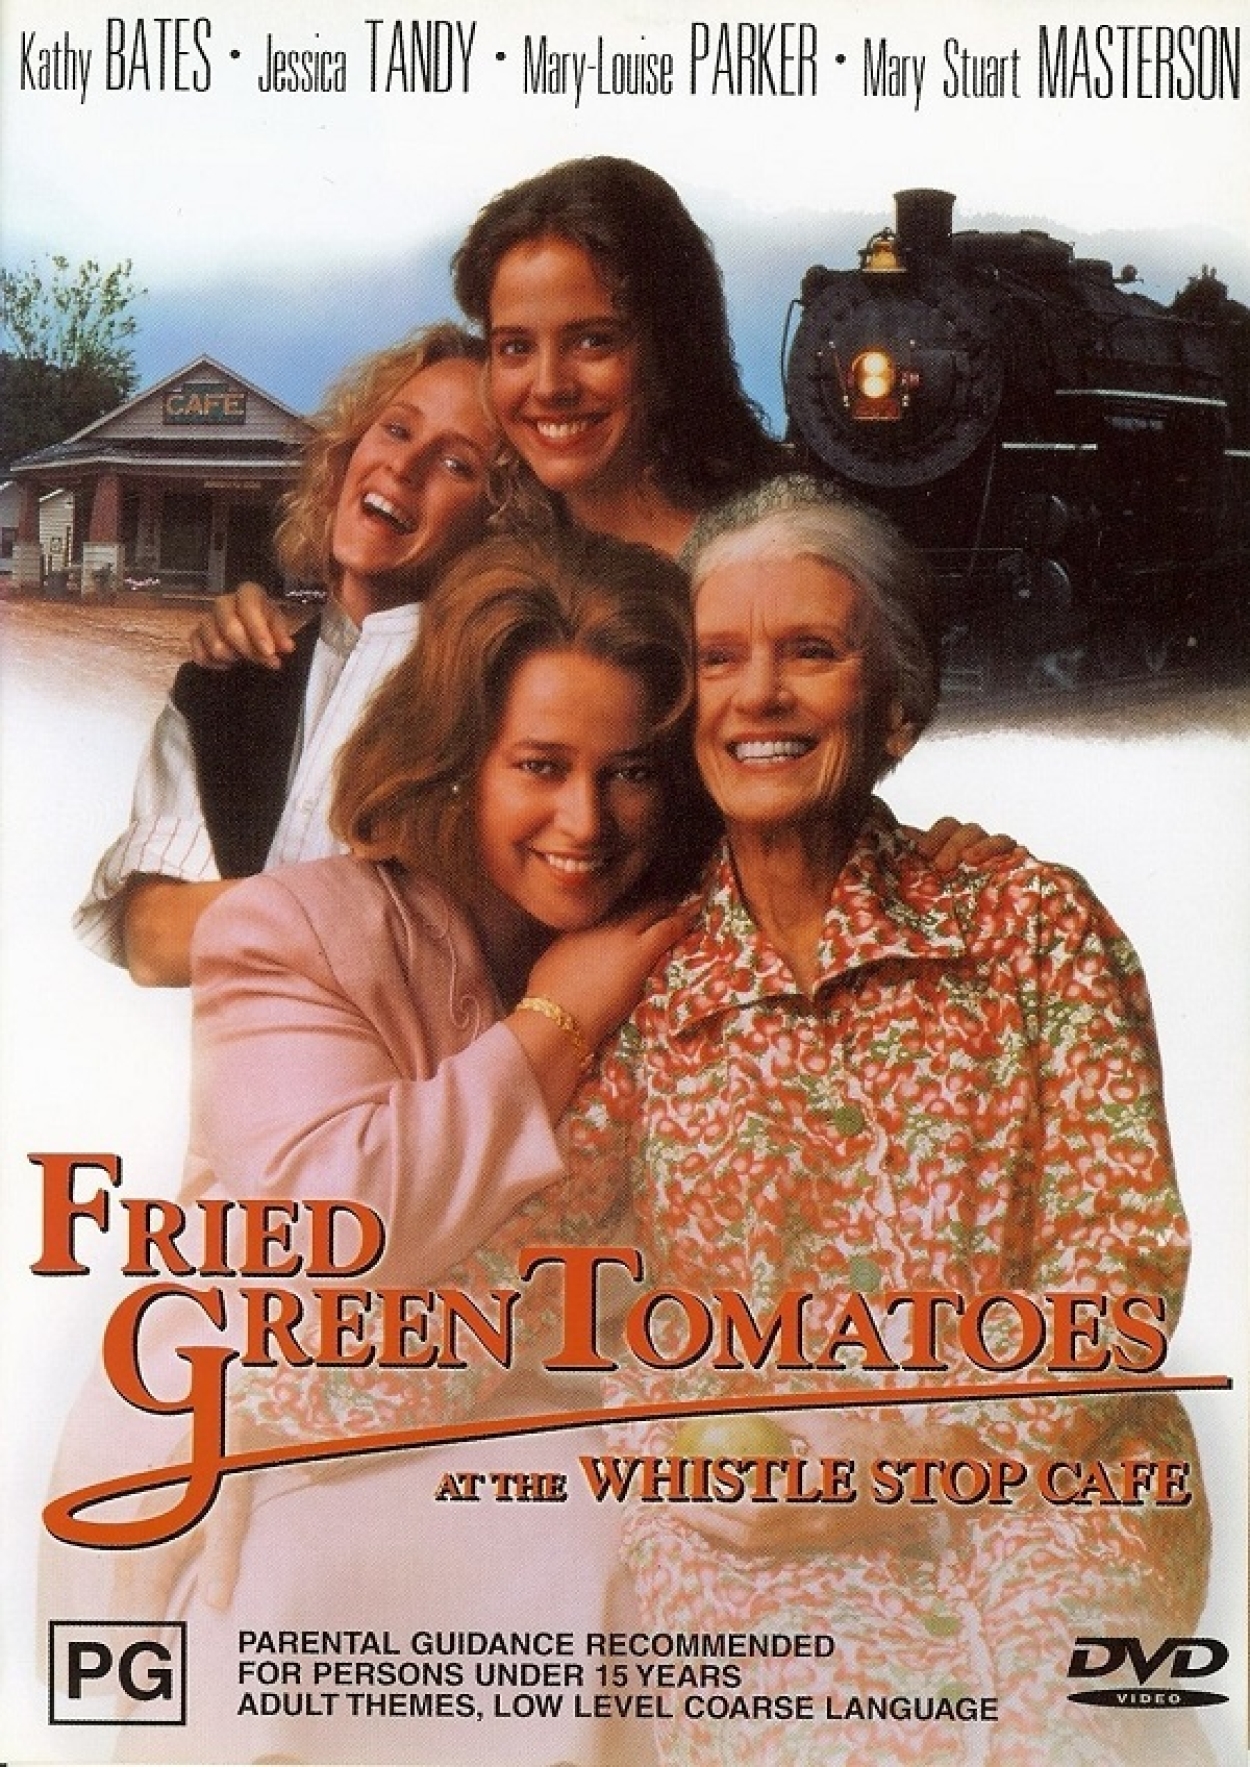 Κινηματογραφική Λέσχη Ραφήνας: Πράσινες Τηγανητές Ντομάτες (Fried Green Tomatoes)